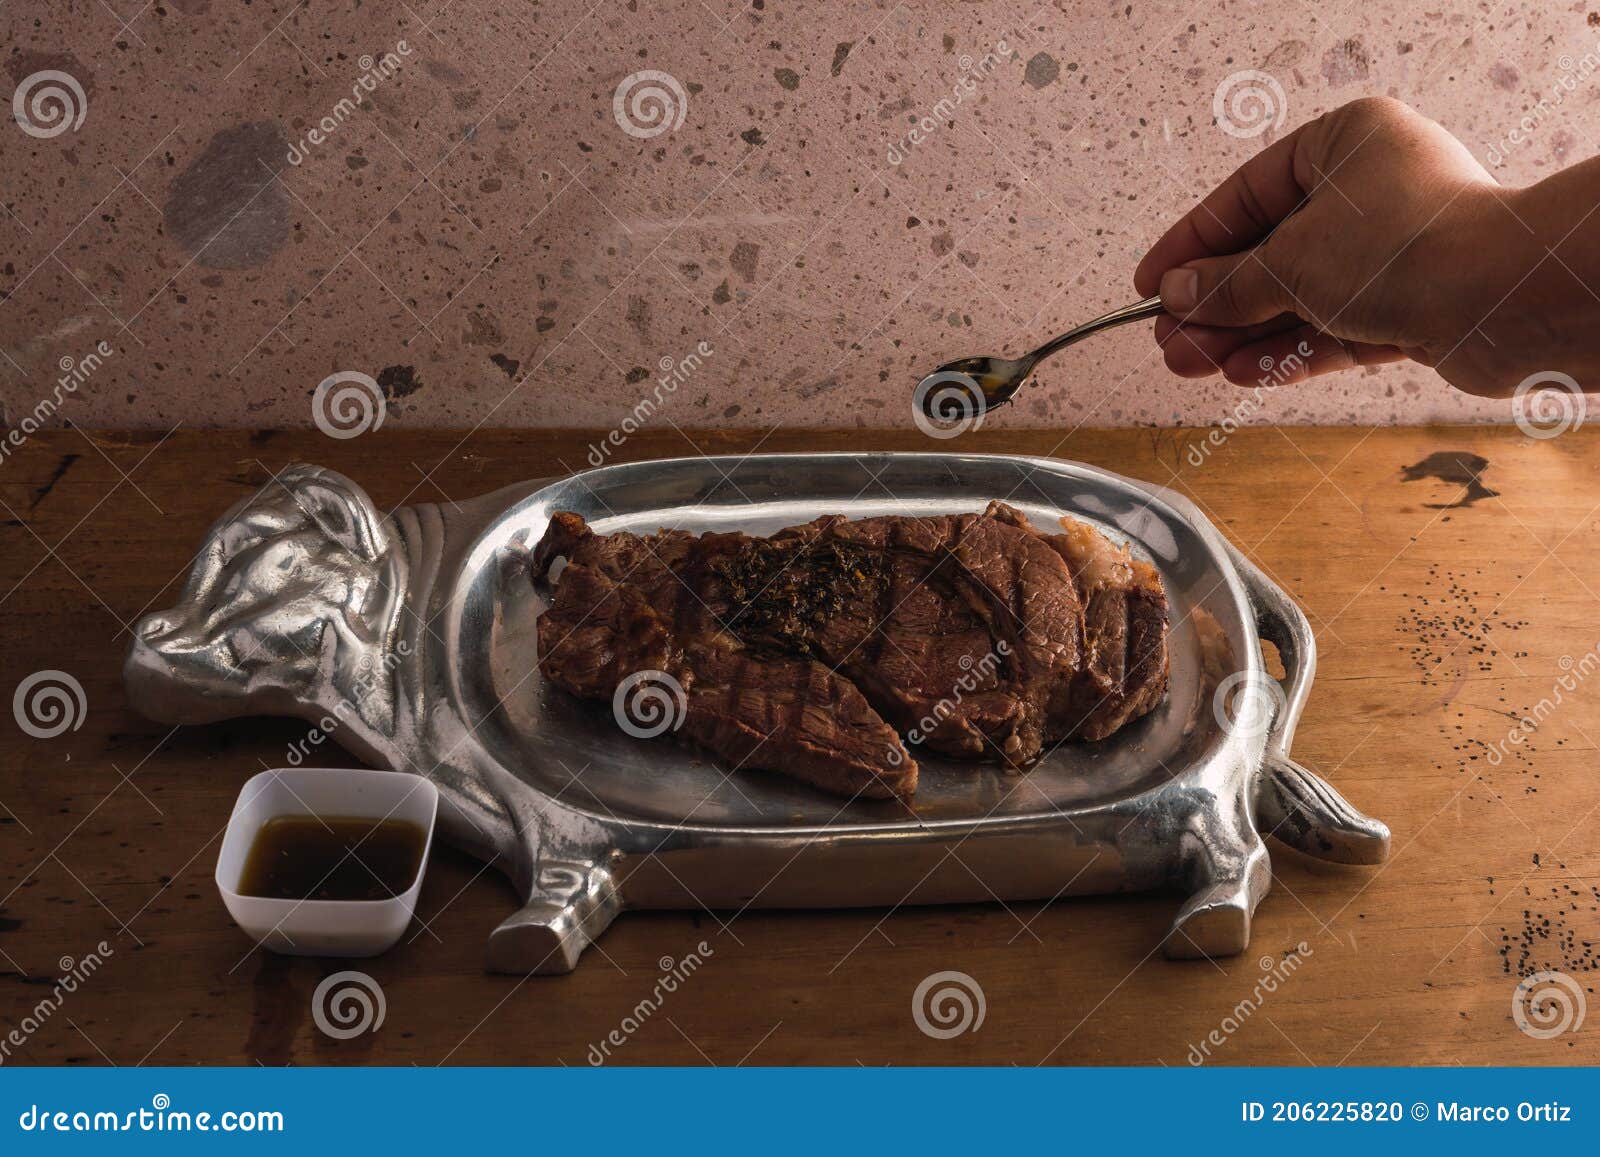 cut of meat `aguja norteÃÂ±a sonora`, served on a silver plate in the  of a cow 15